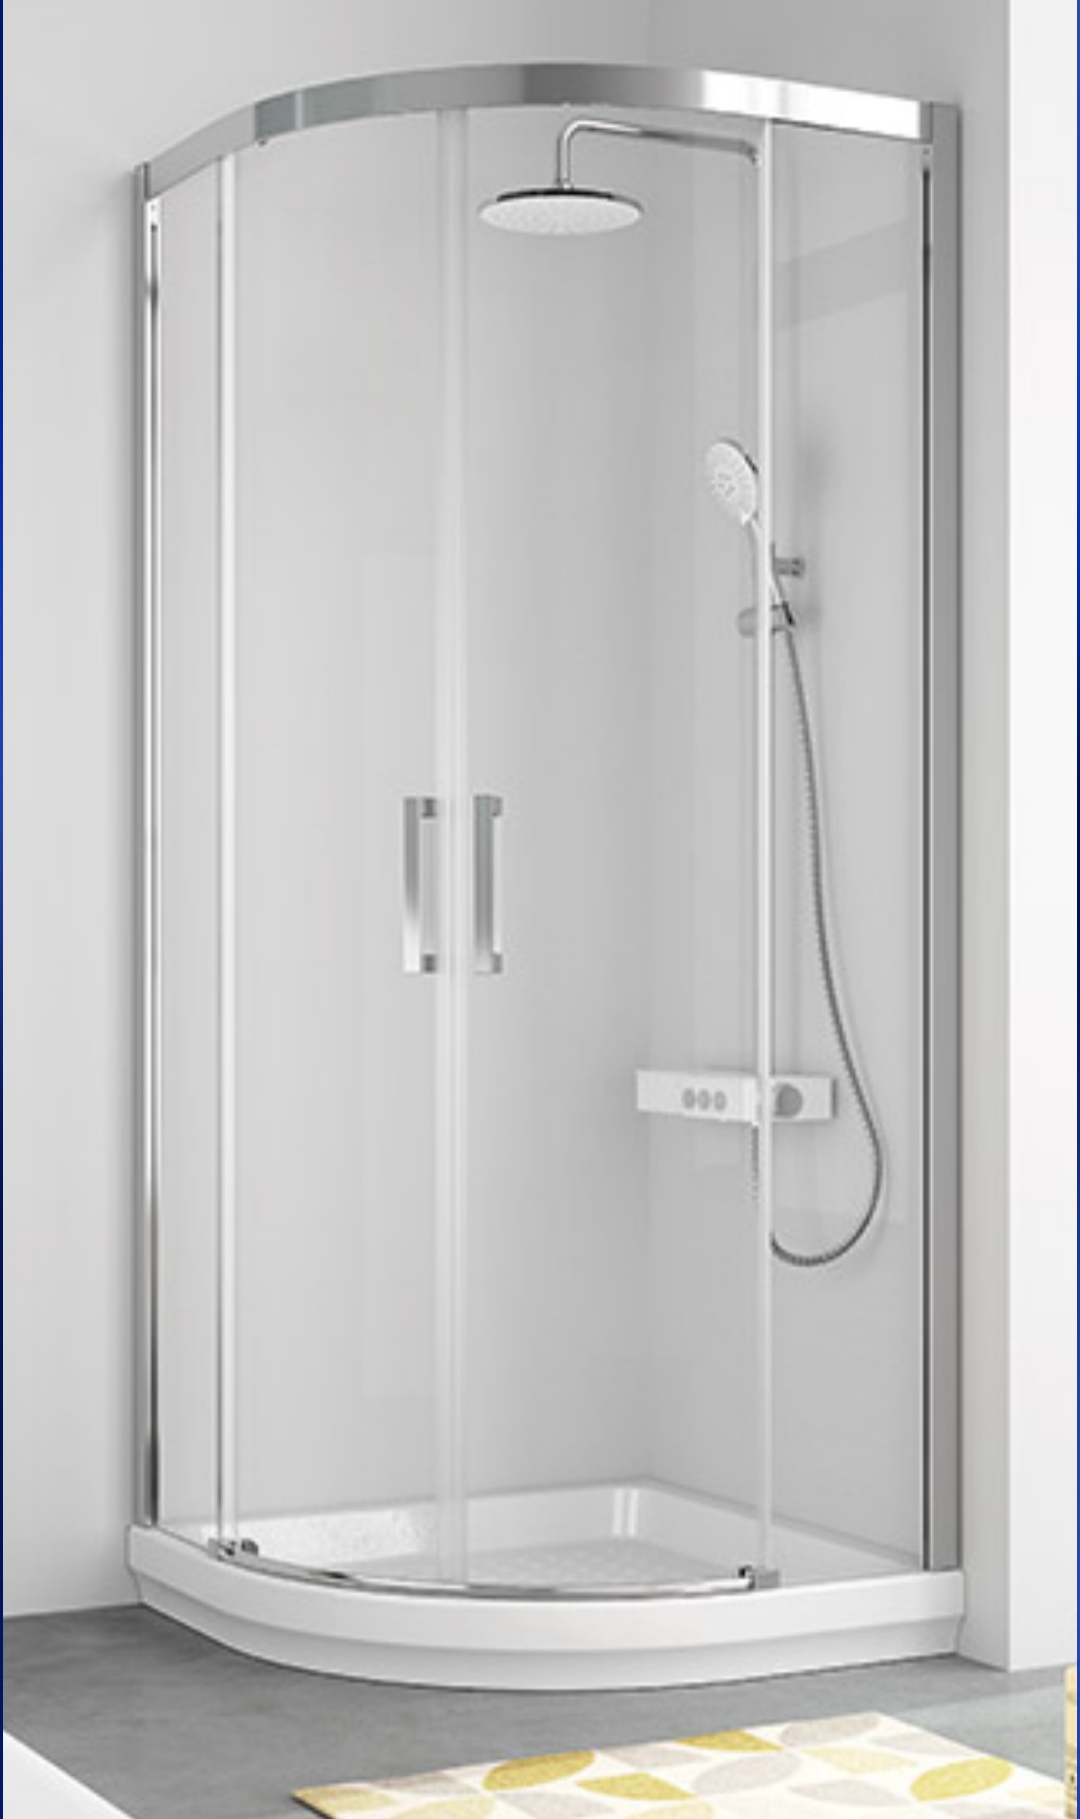 Mampara para bañera con puerta corredera rh2040 - Mamparas de ducha a medida